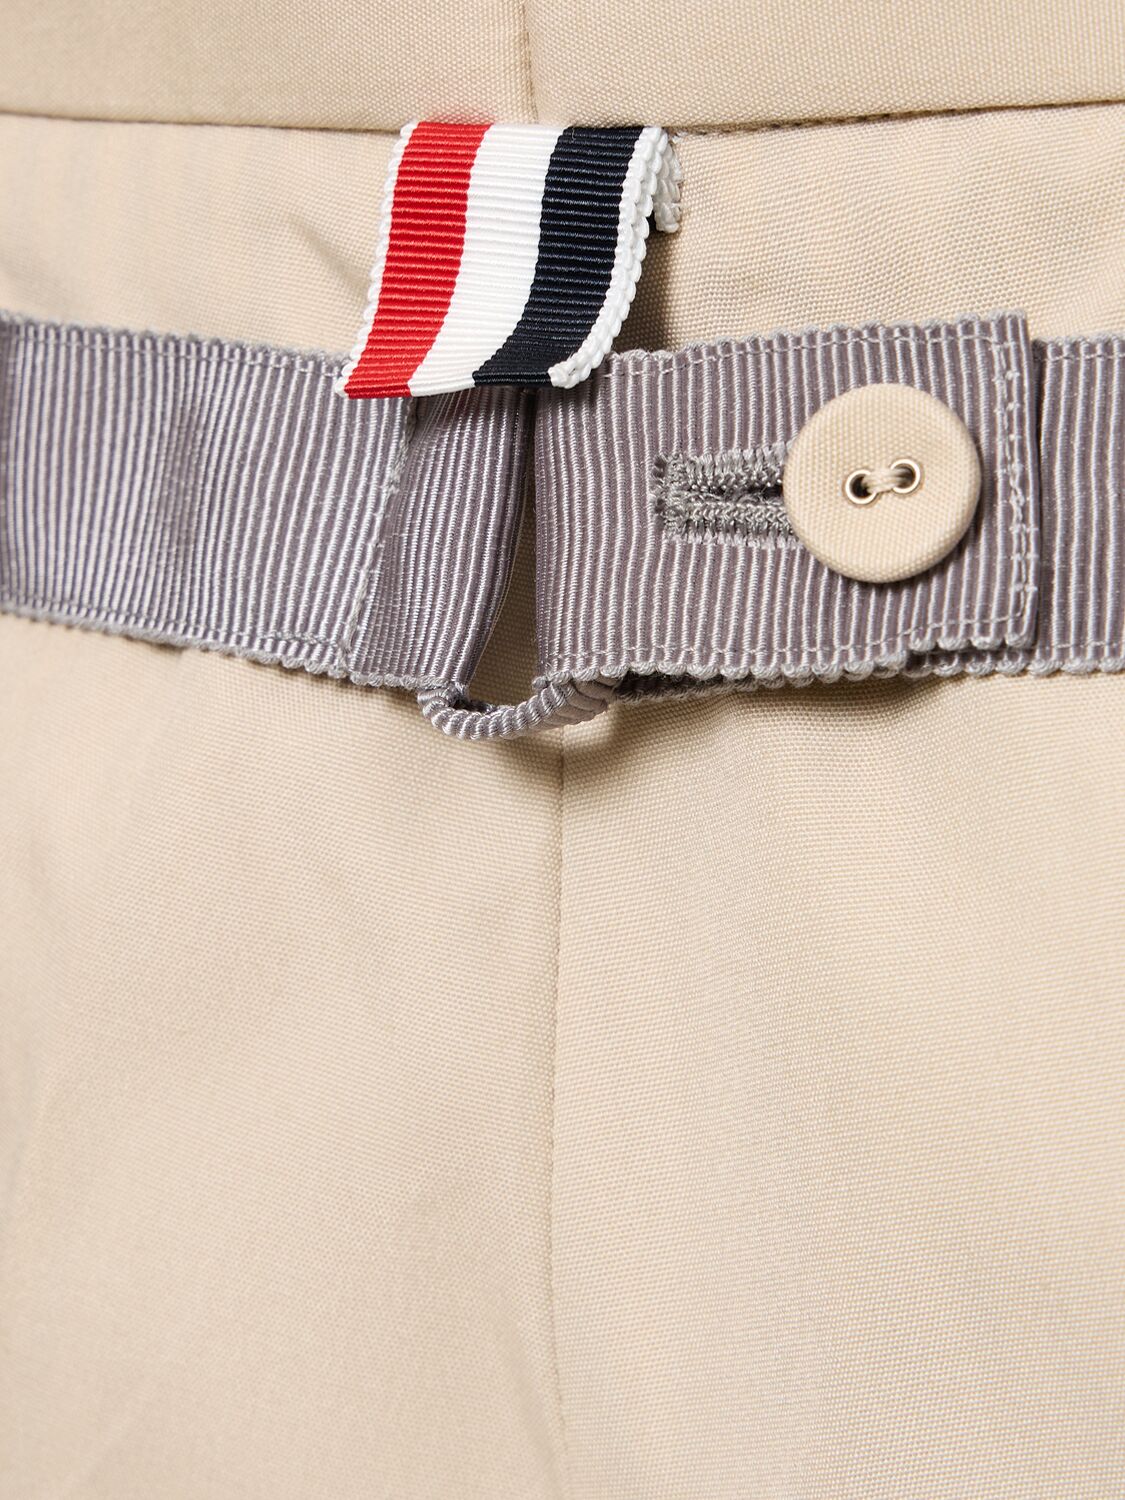 Shop Thom Browne Cotton Blend Backstrap Pants In Khaki